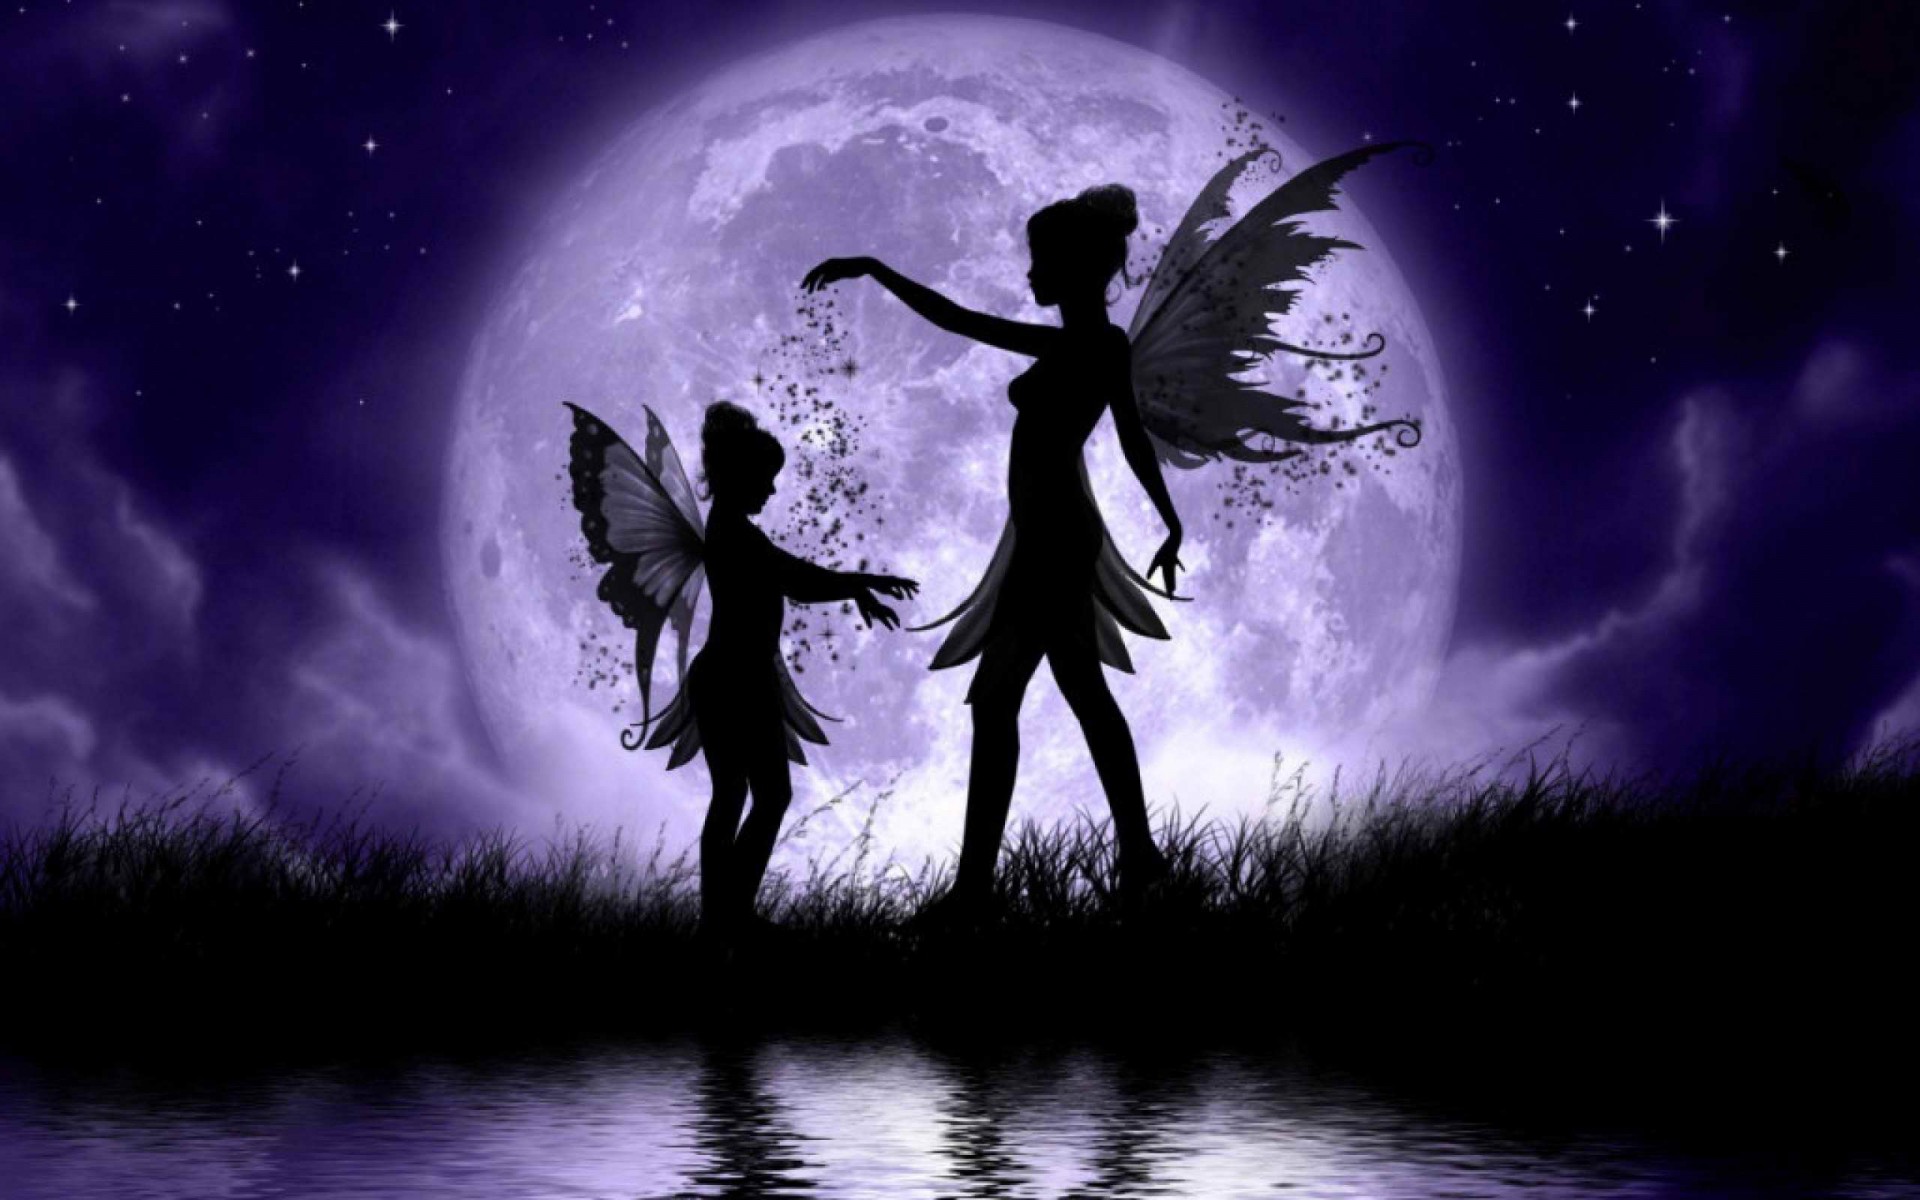 Fairy's Dancing in the Moonlight